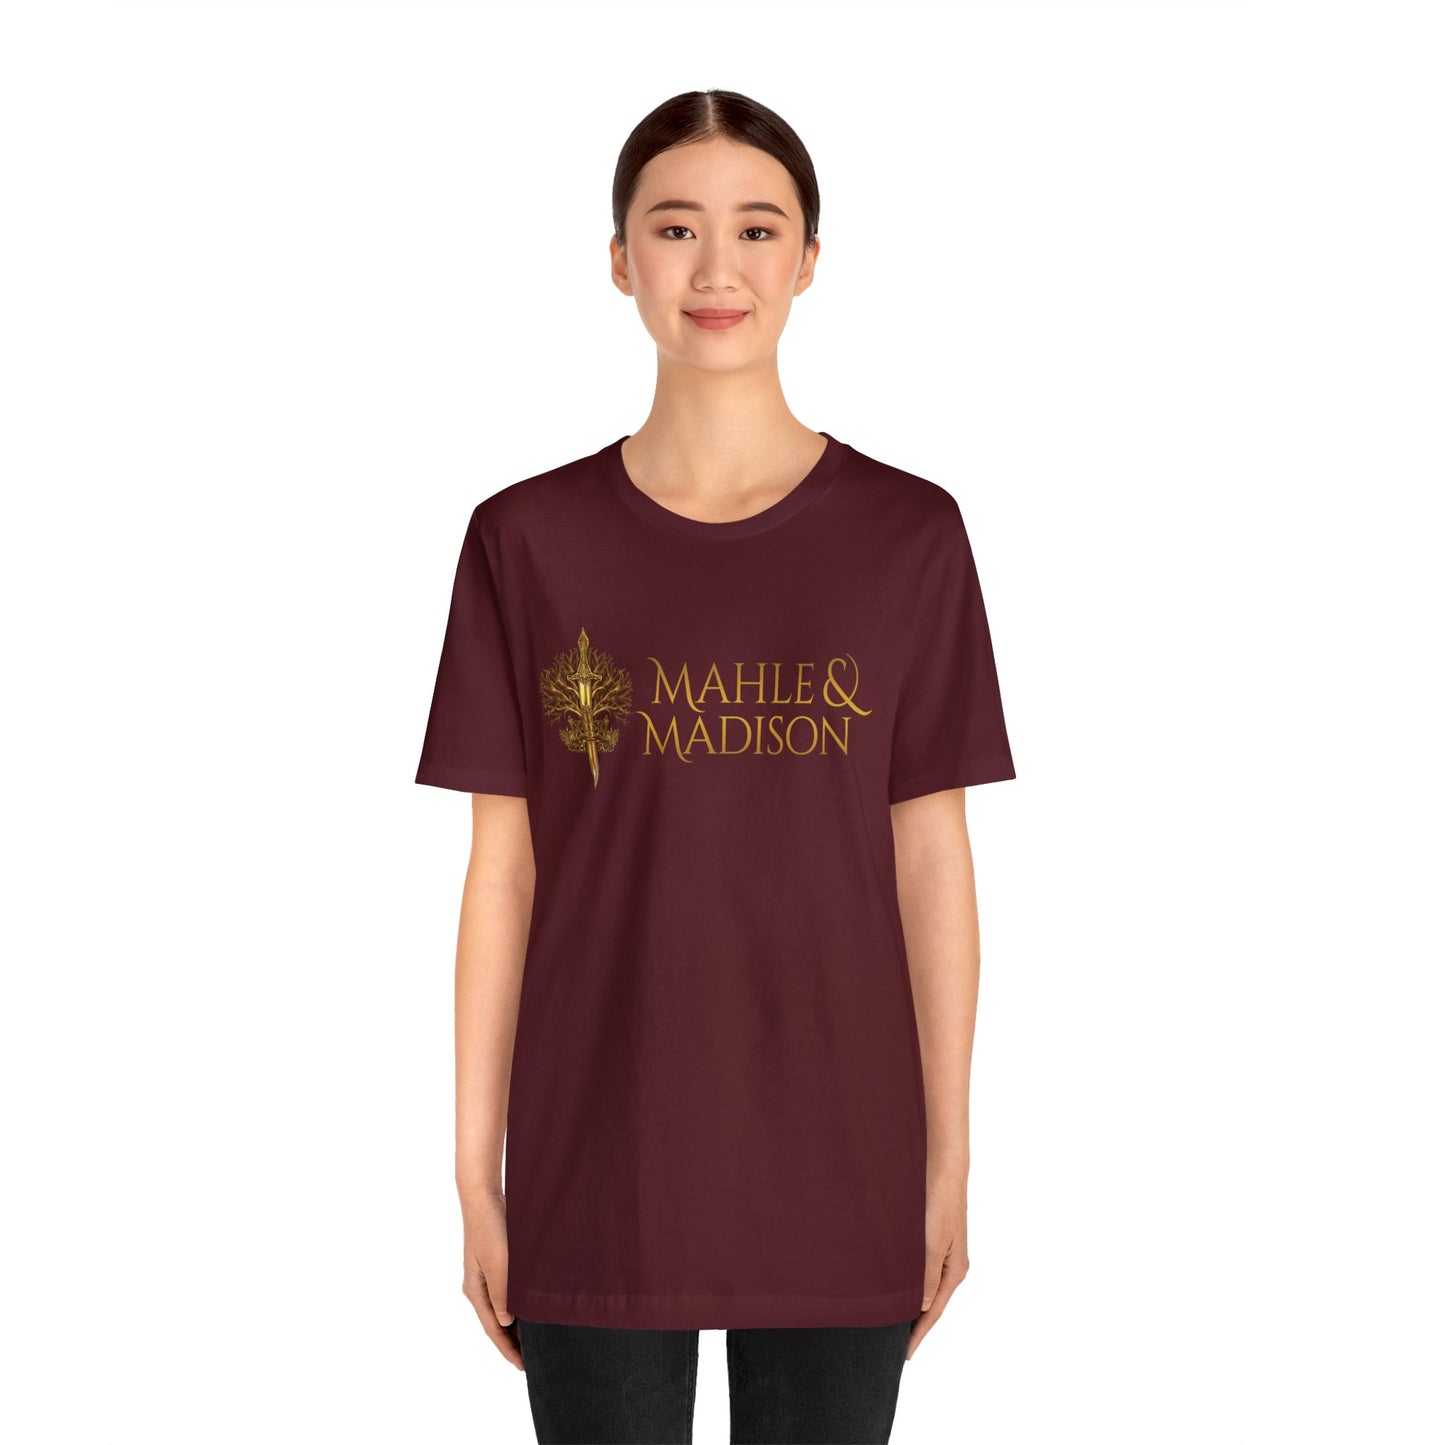 Mahle and Madison Unisex Jersey Short Sleeve Tee